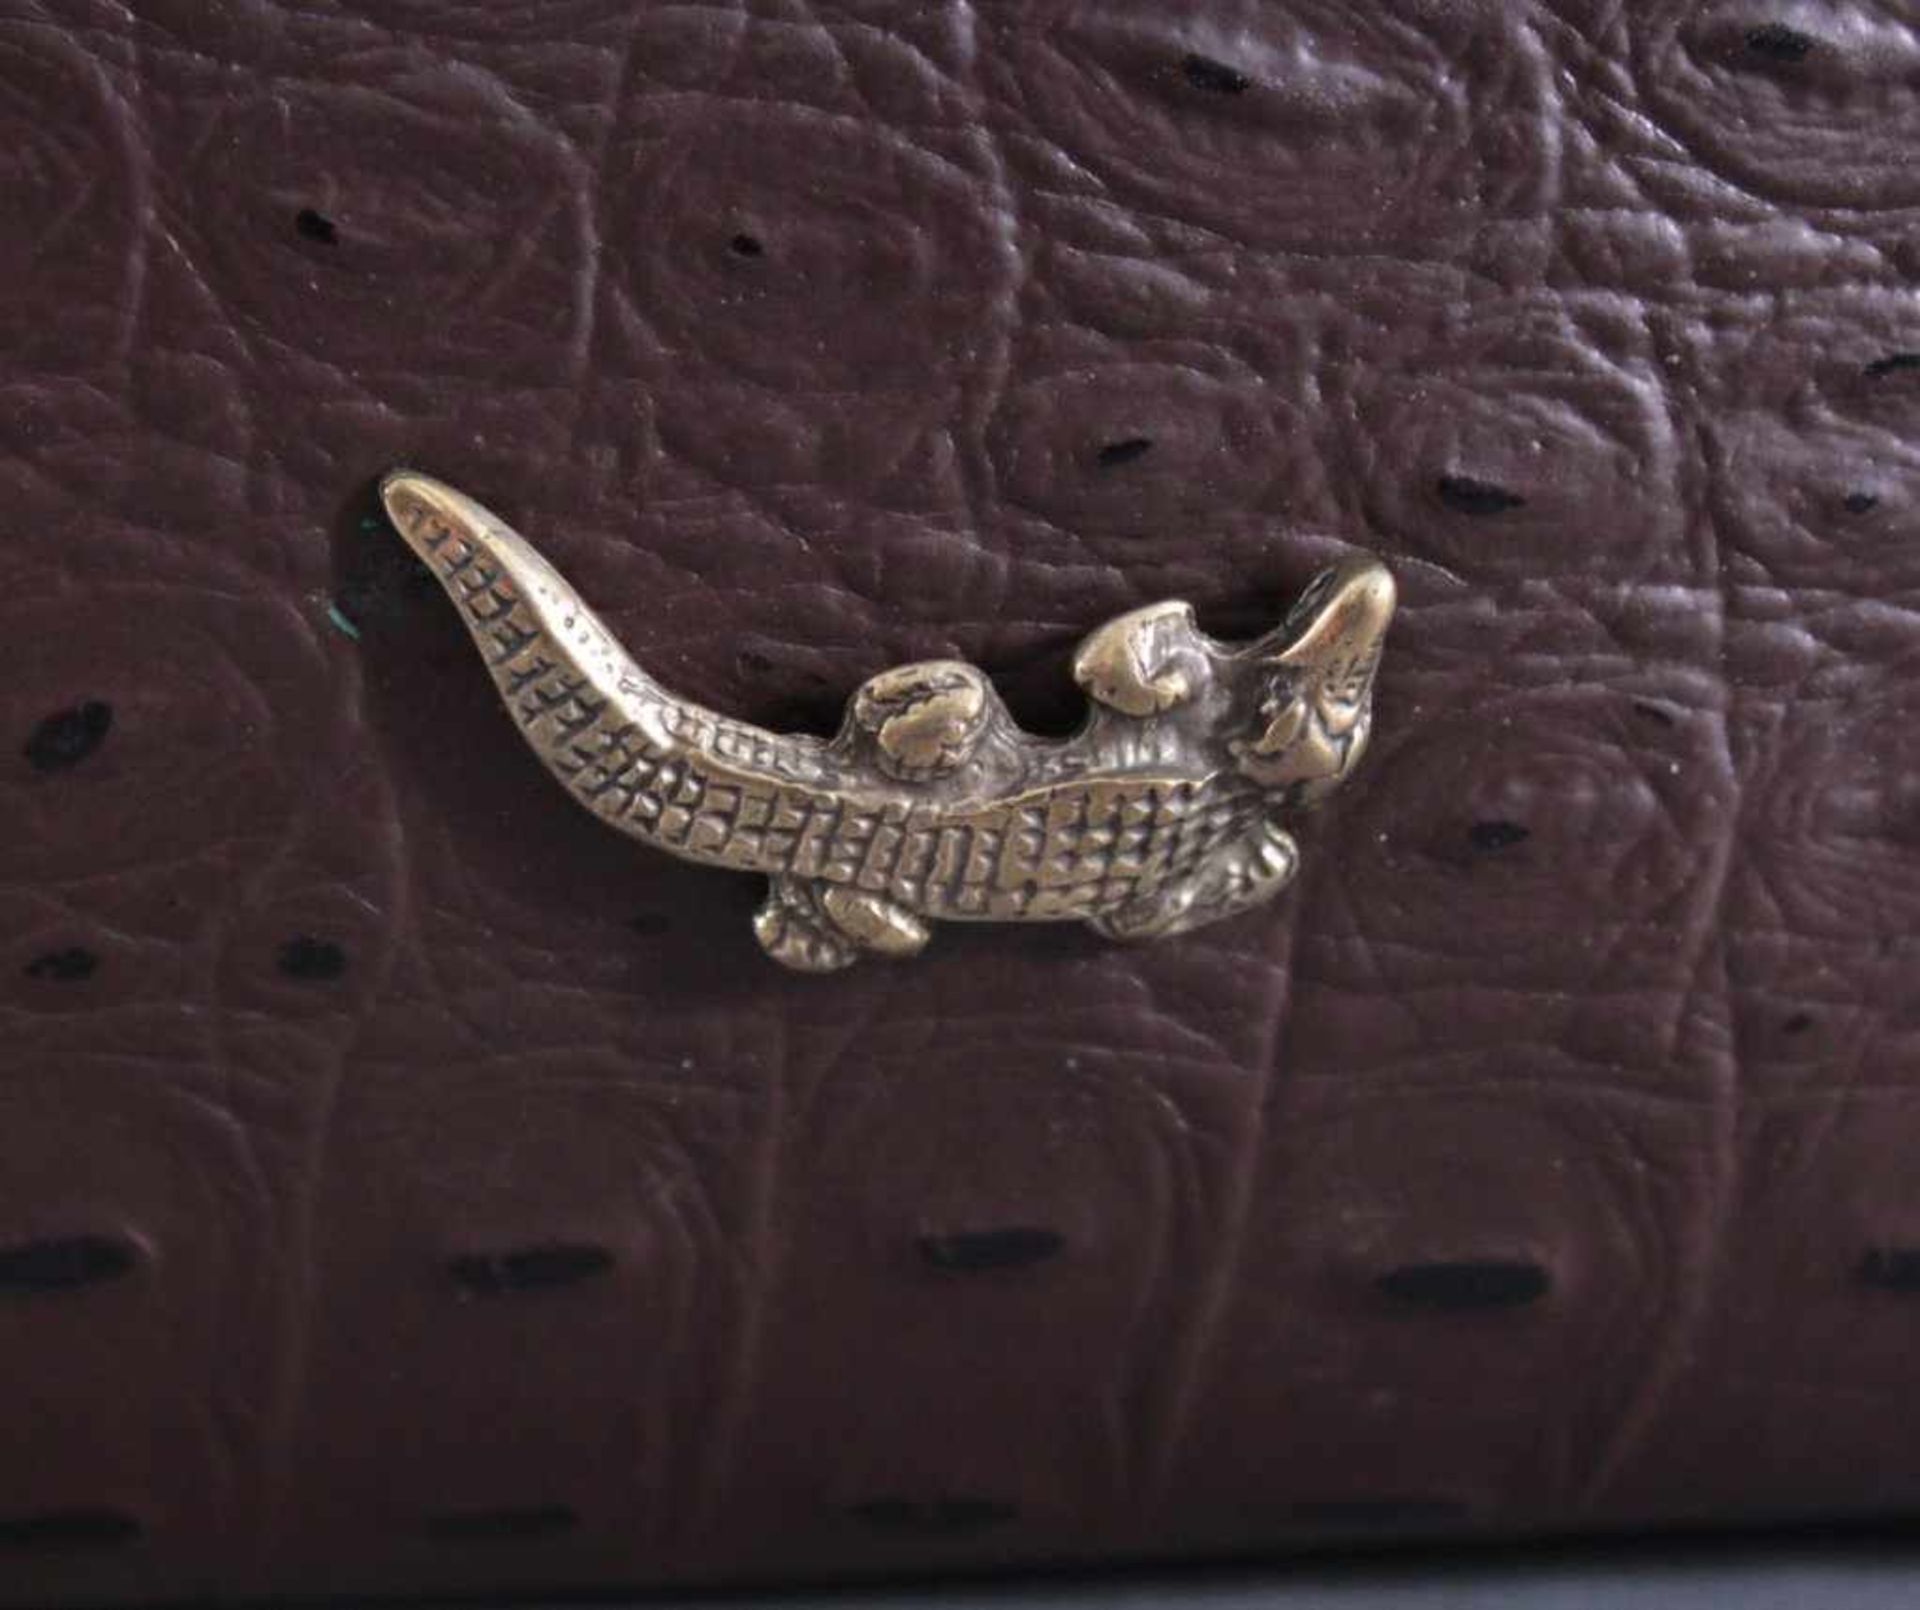 Krokodilleder-TascheDamenhandtasche aus Krokodilleder, braun, mit KrokodilEmblem kleinem - Bild 3 aus 3